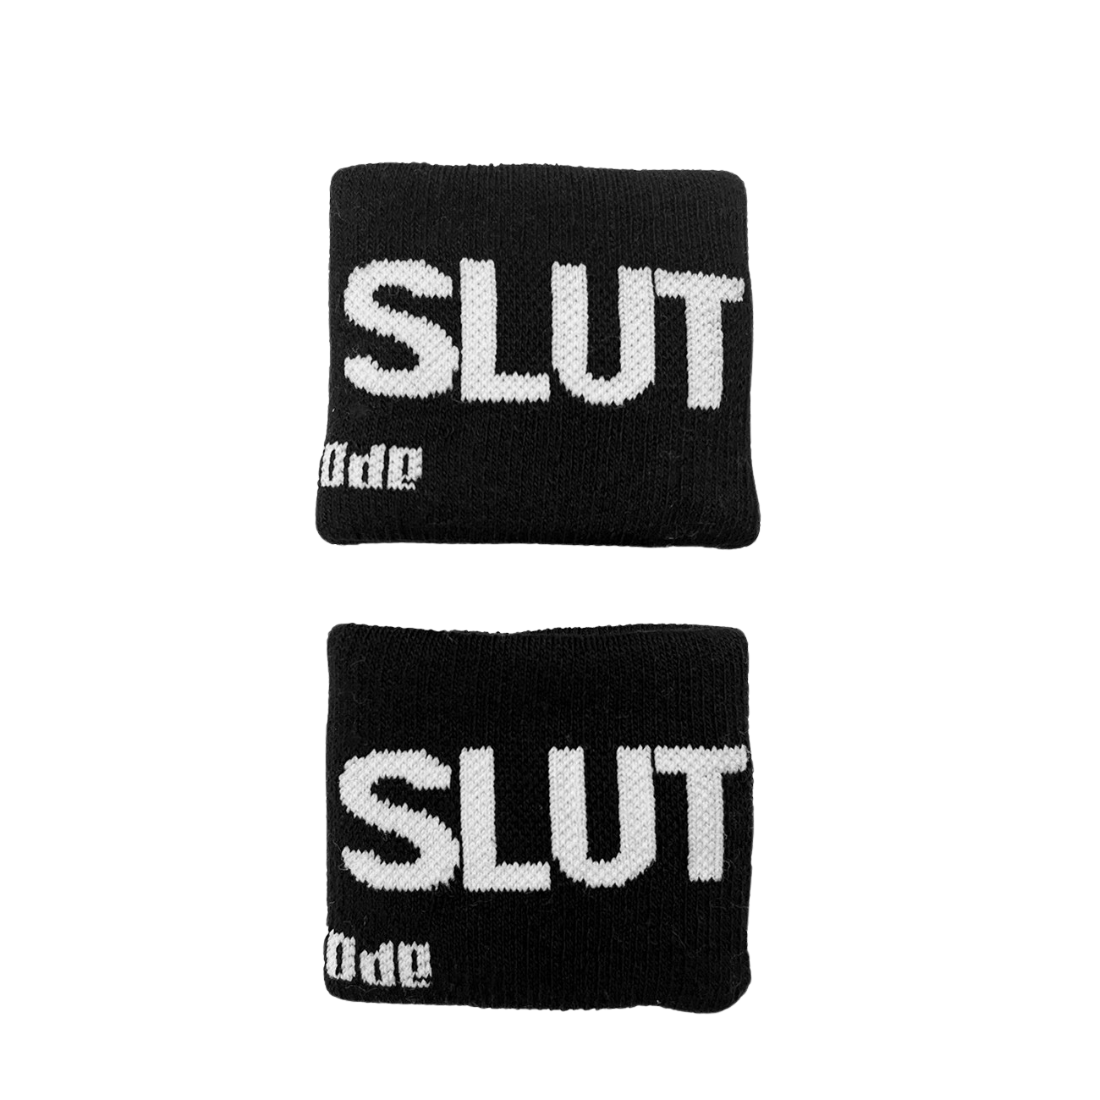 2 'Slut Identity' Polsbandjes ontworpen door Barcode. Perfect voor gay mannen en te koop bij Flavourez.